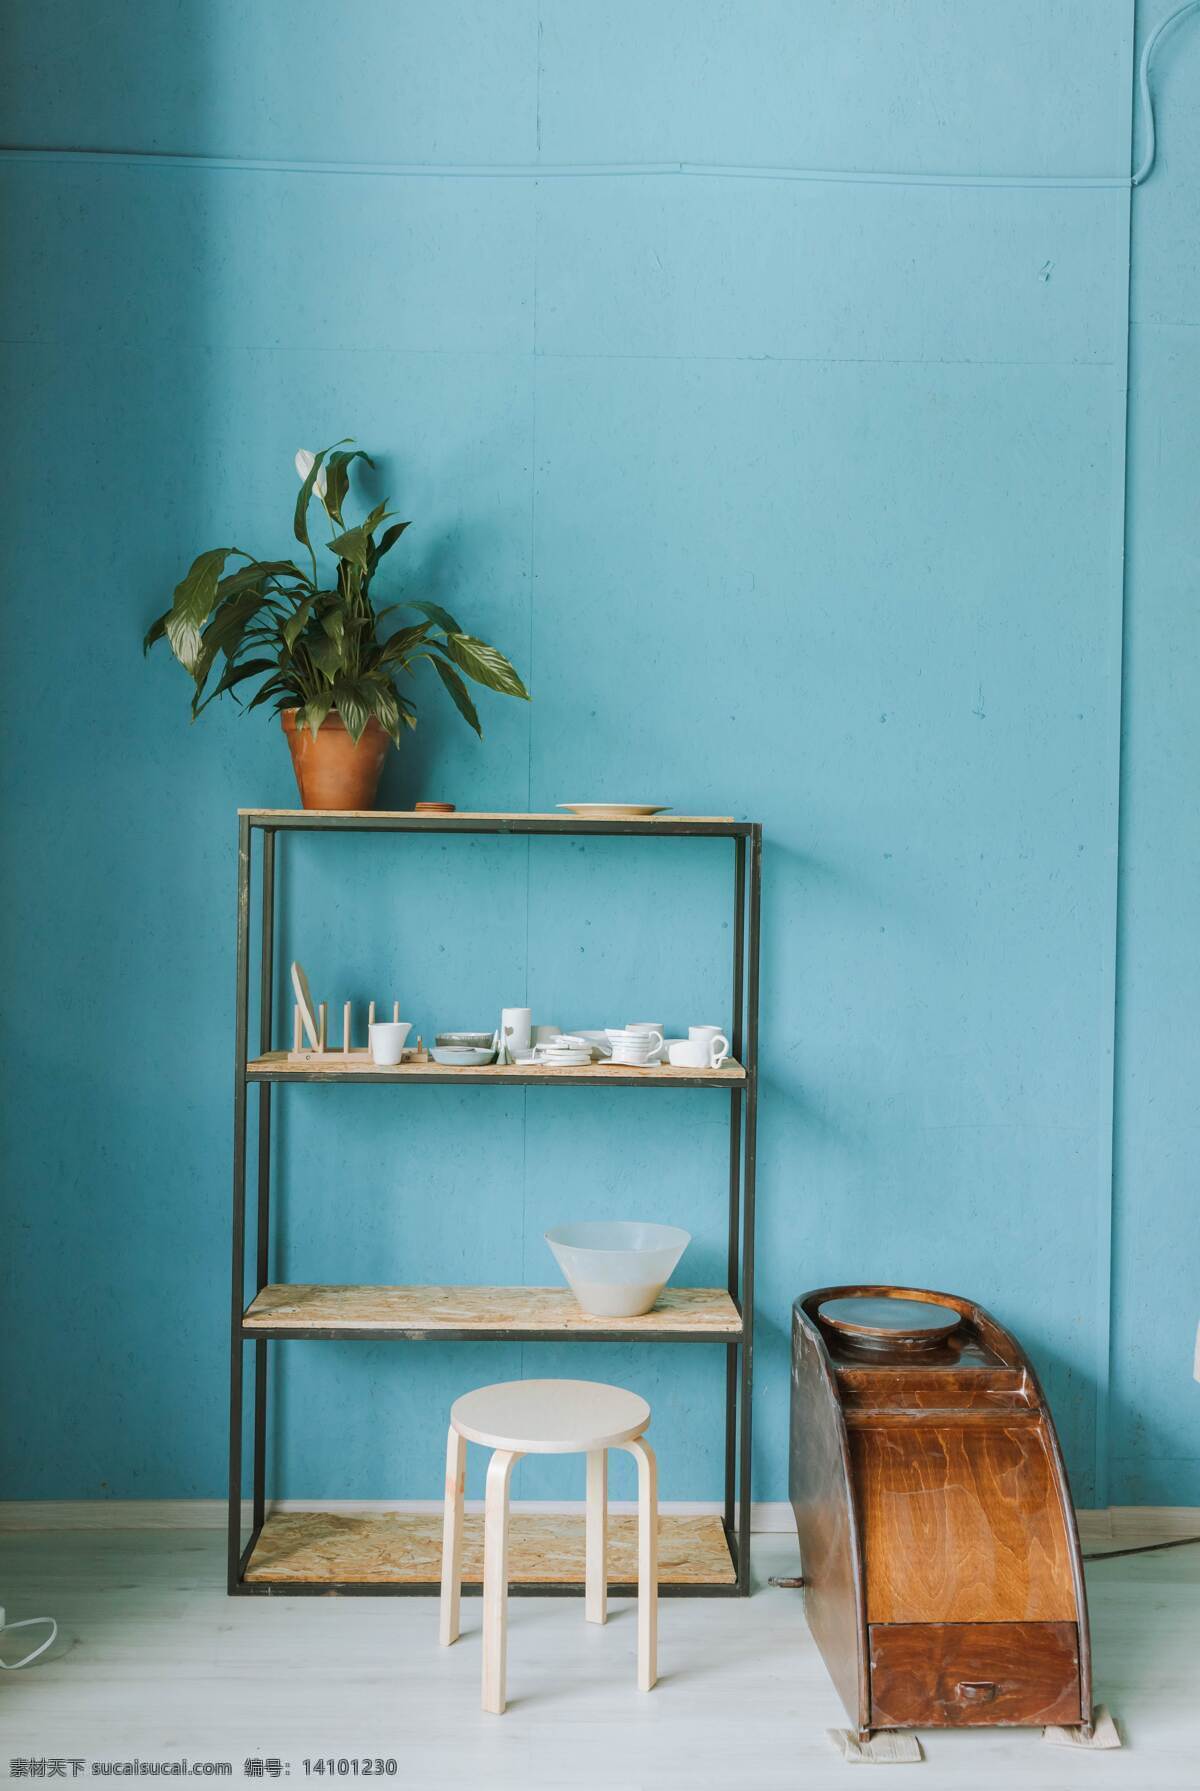 家居柜子图片 家居 柜子 植物 环境 家庭 温馨 盘栽 凳子 蓝色 生活百科 家居生活